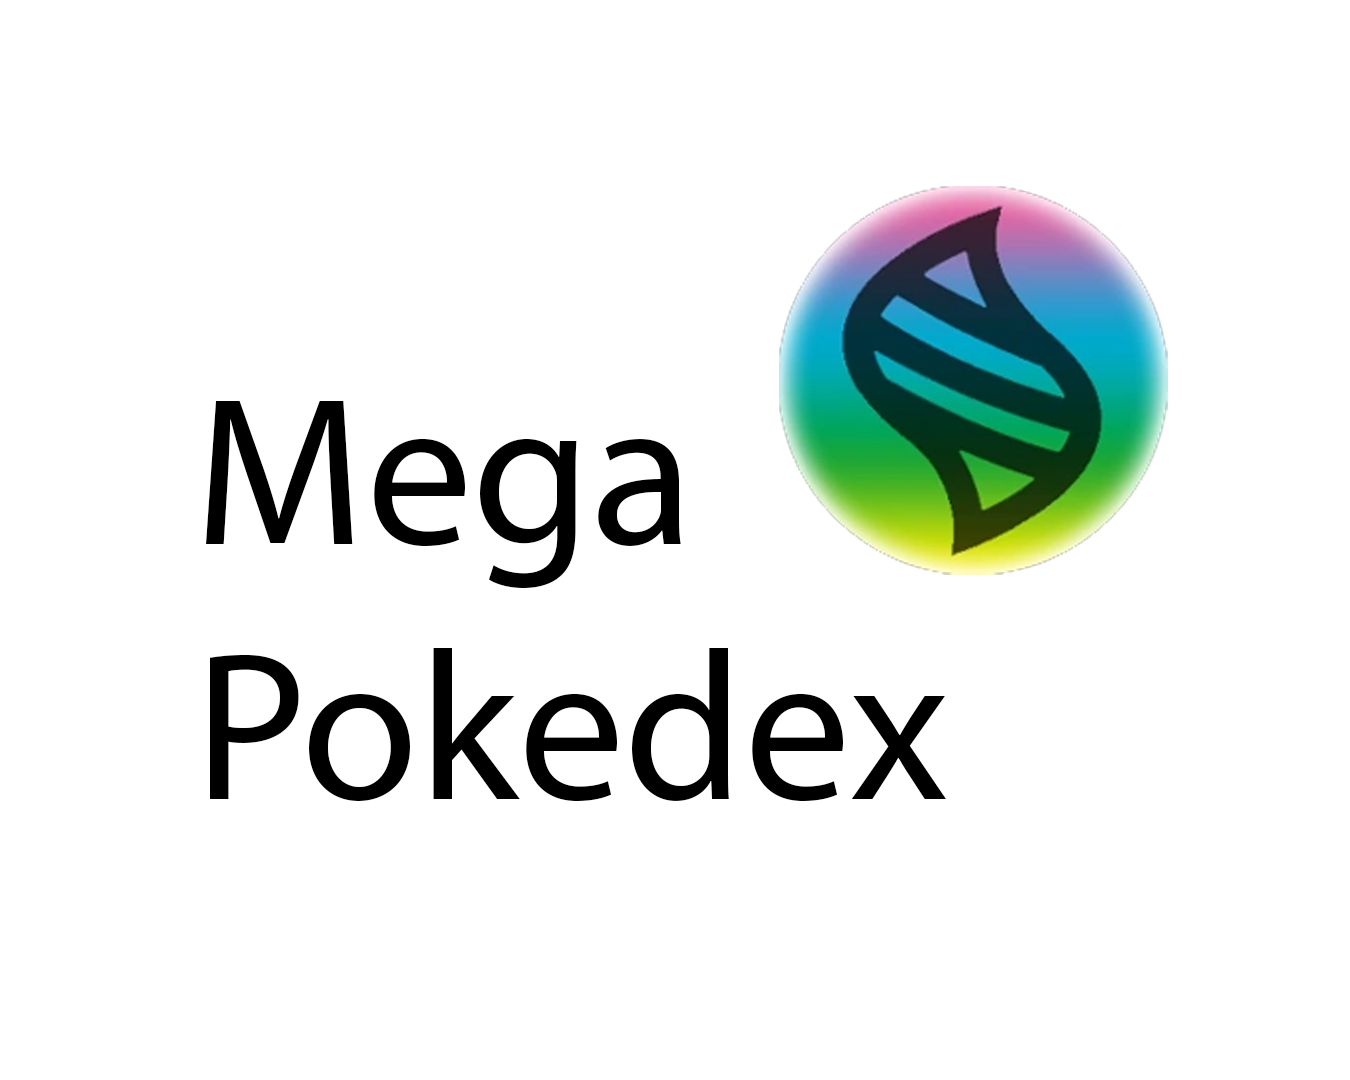 Mega Slowbro, Pokédex